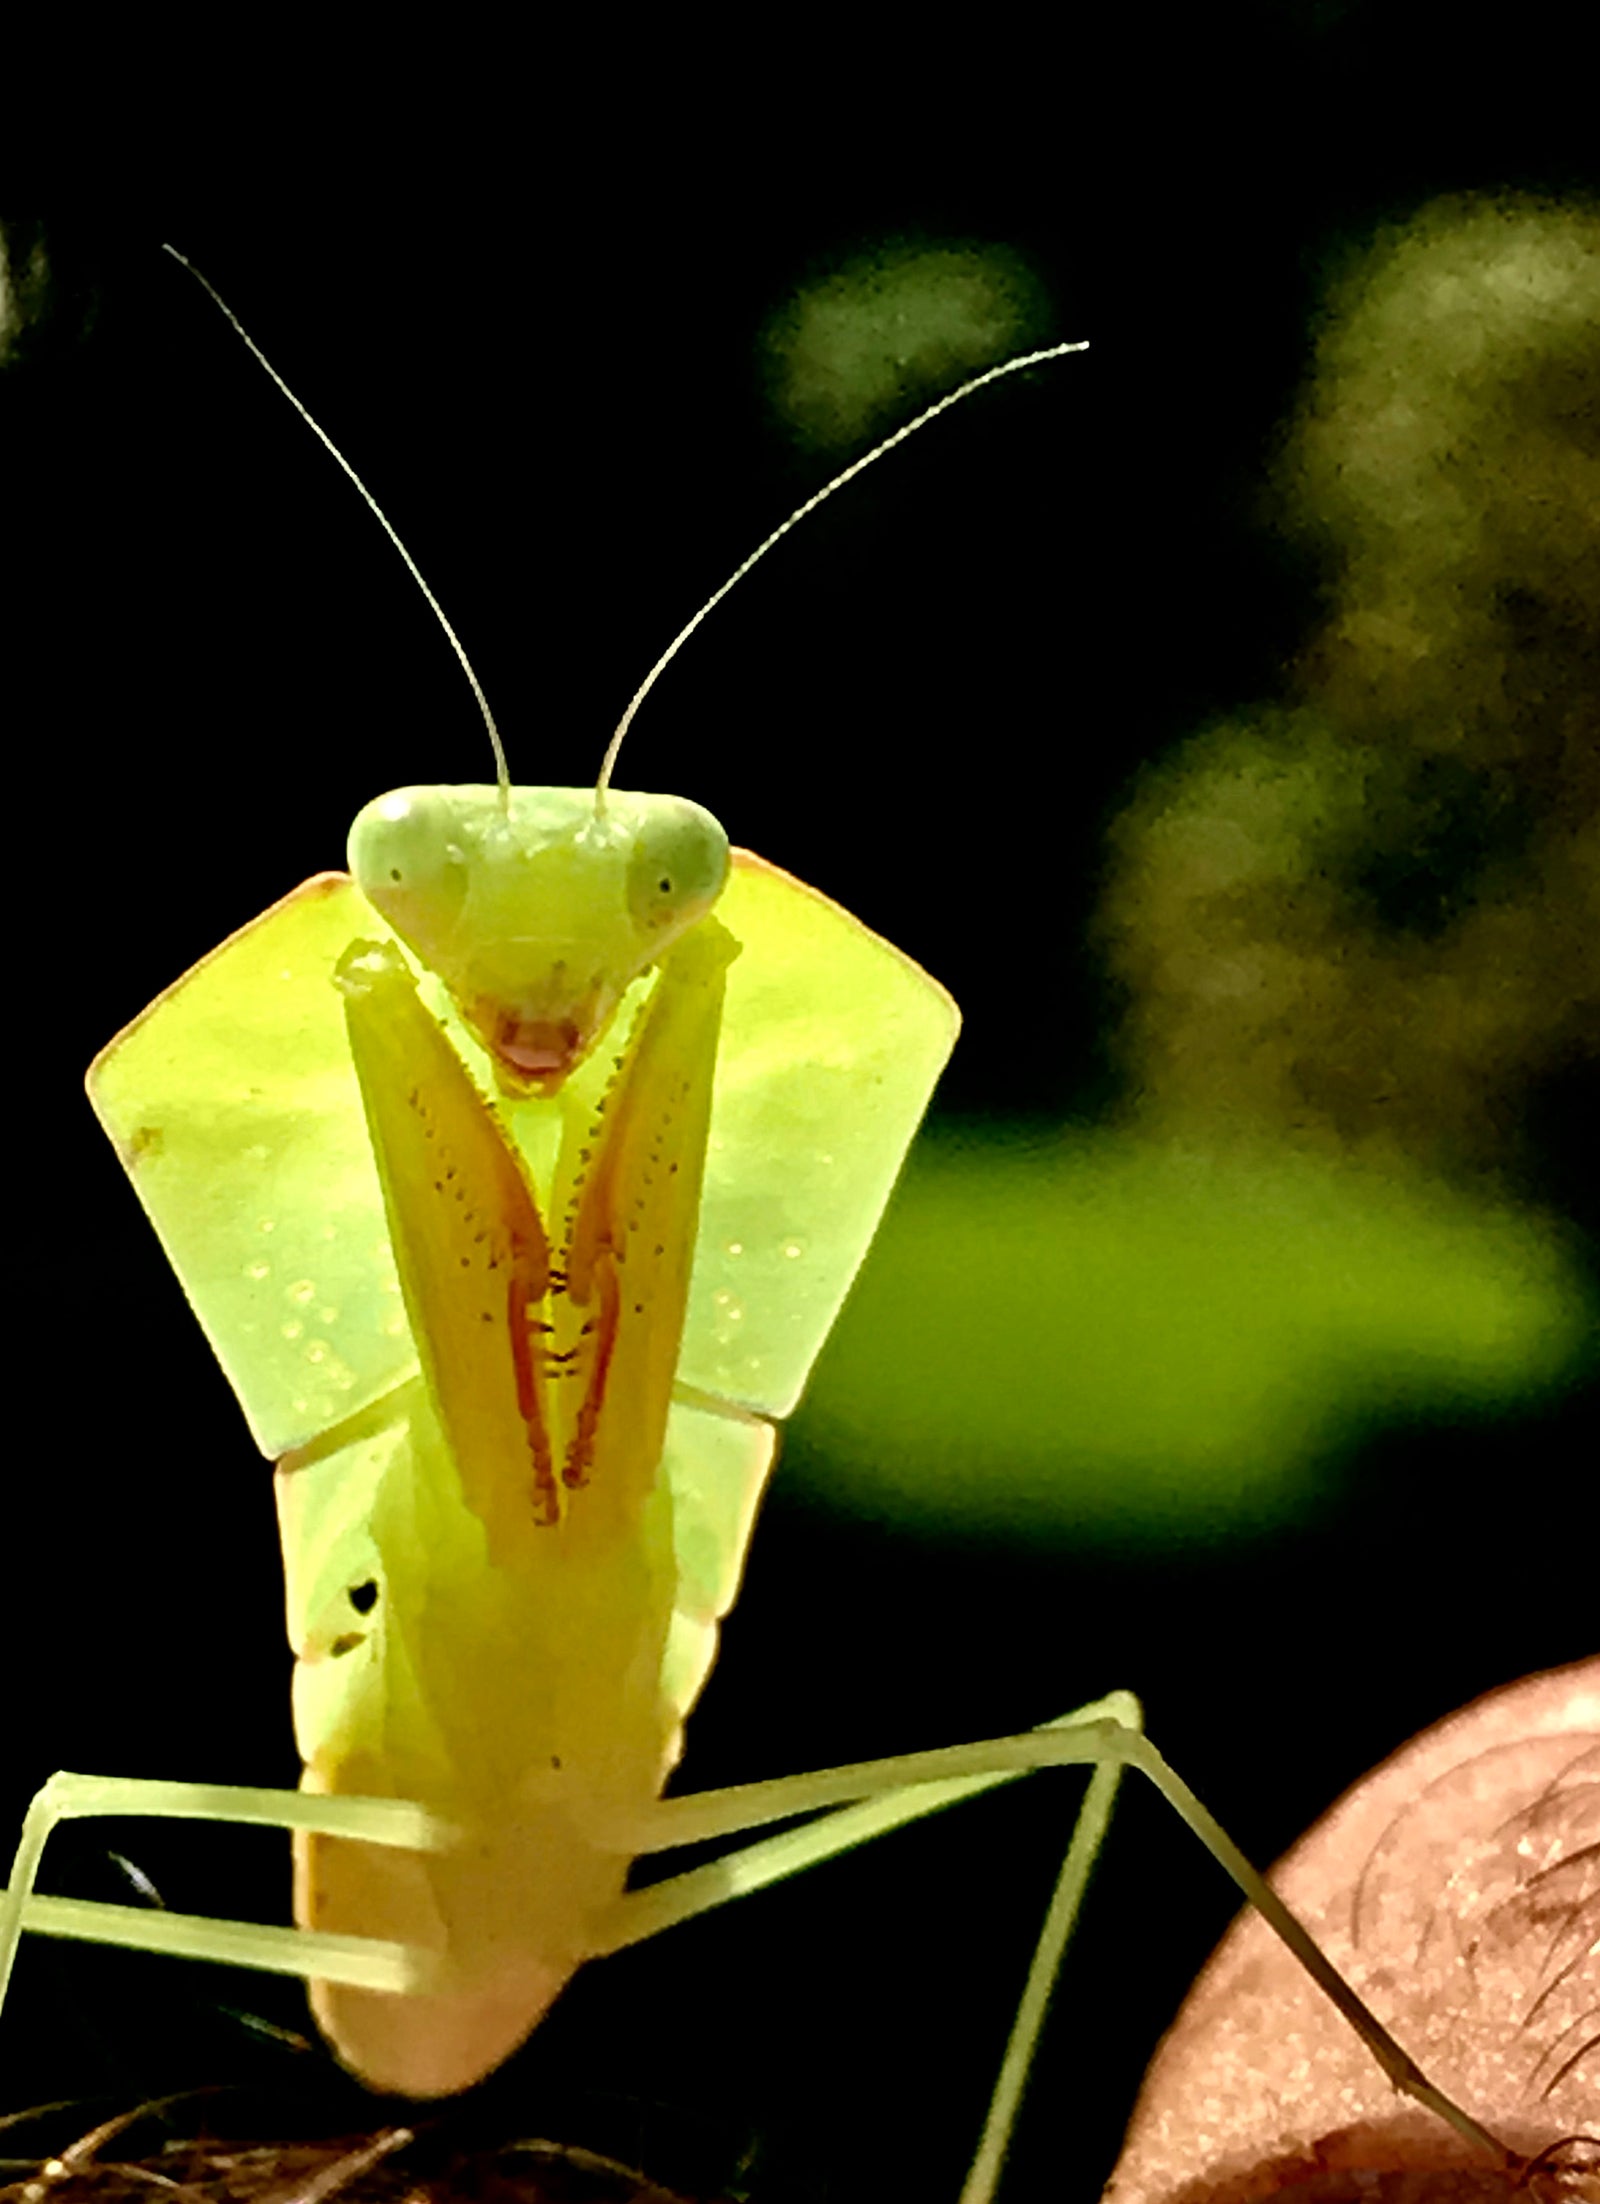 Asiadodis yunnanensis (Chinese shield mantis) "Cobra" praying mantis Choerdodis